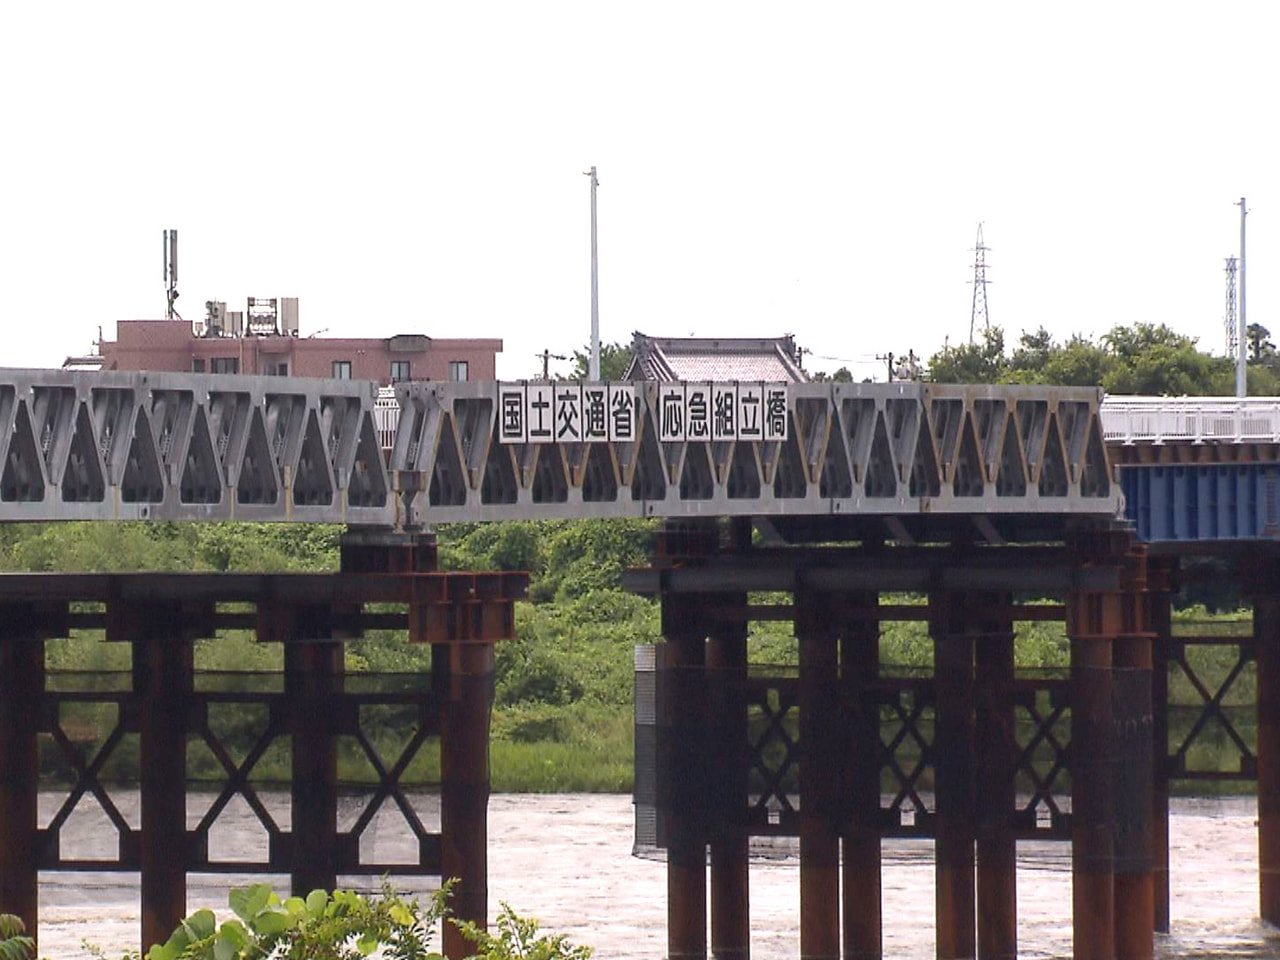 ２０２１年５月の大雨の影響で橋脚が傾き通行止めが続く各務原市の川島大橋について、...